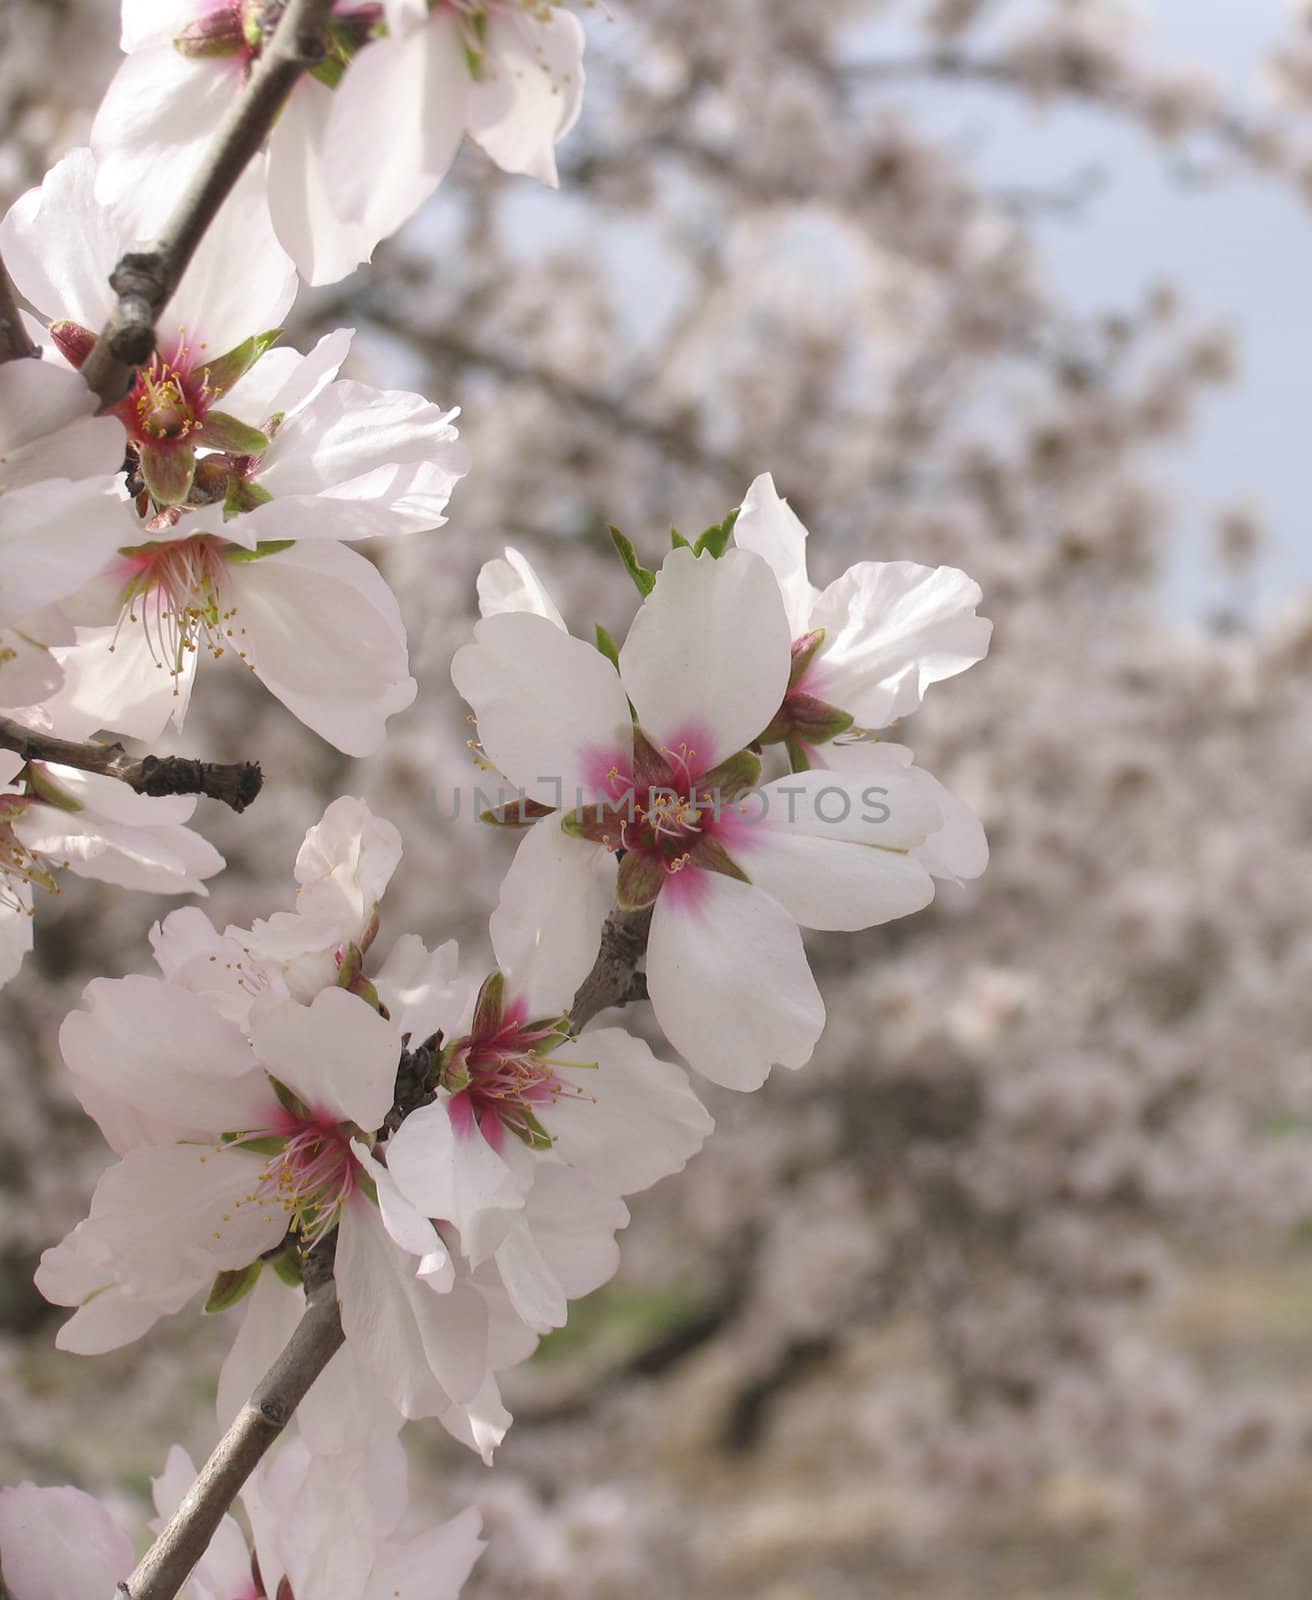 Apple tree in blossom near Jerusalem